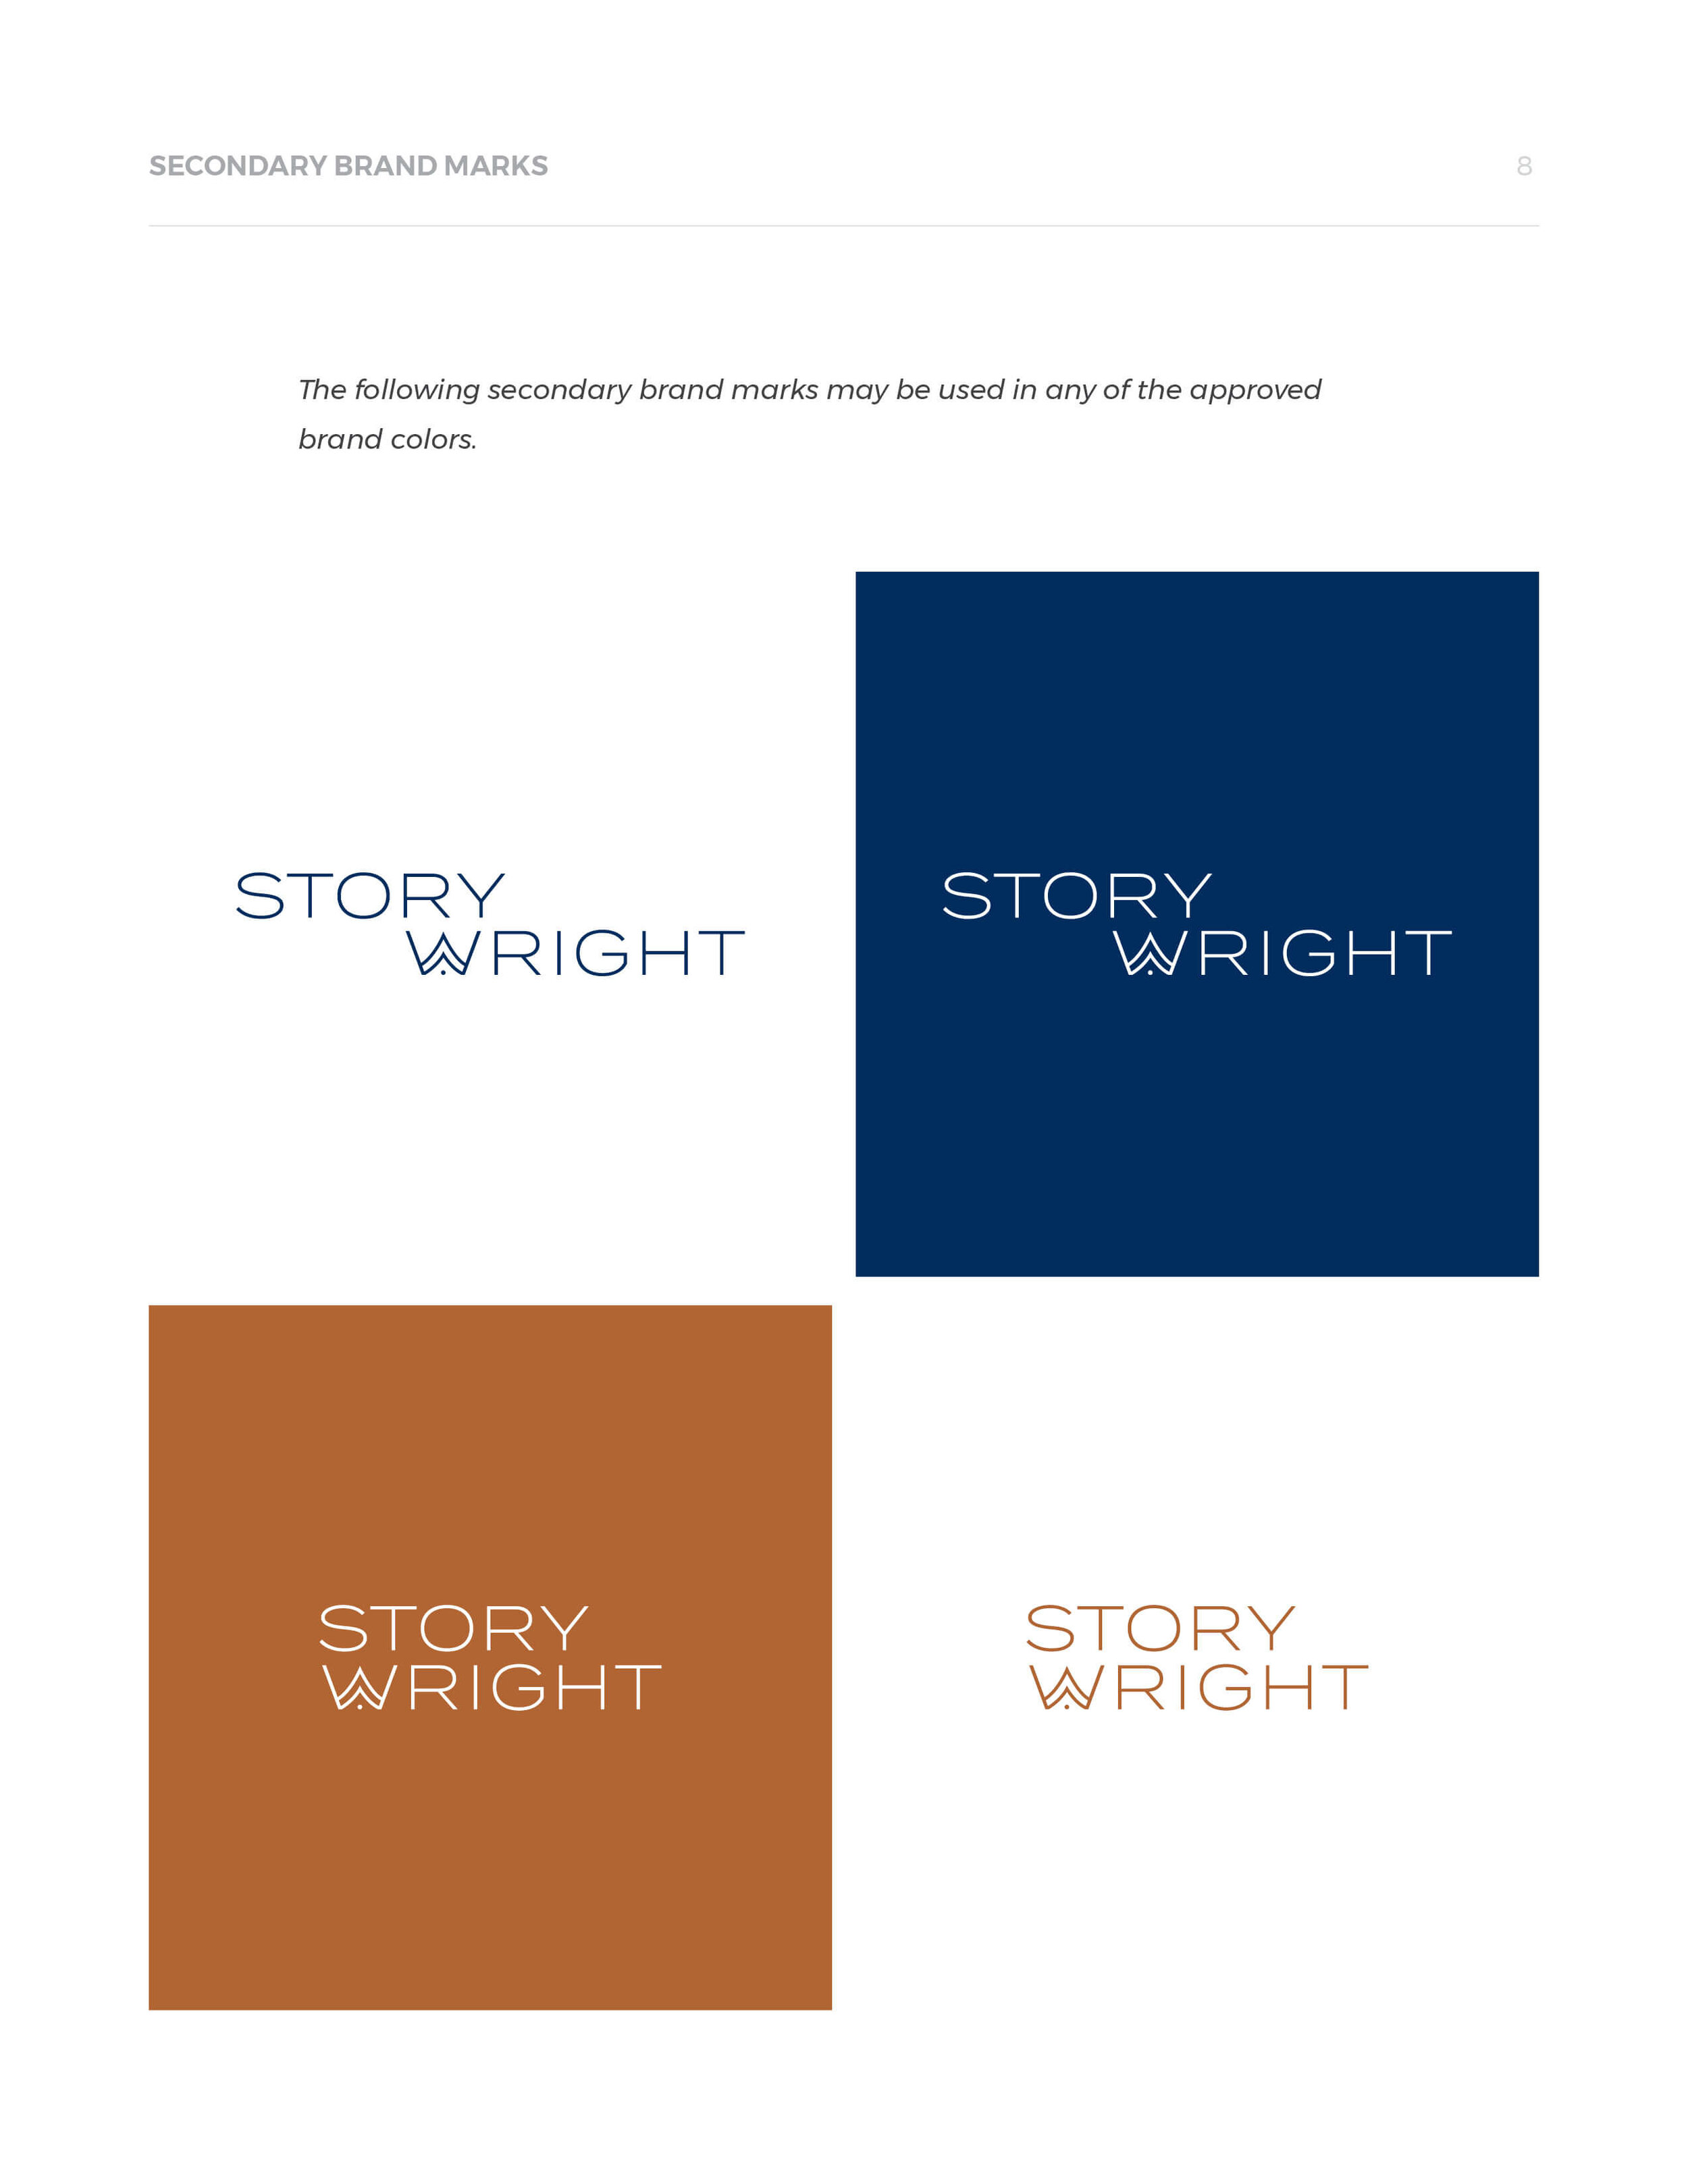 storywright-brand-design-fnl8.jpg